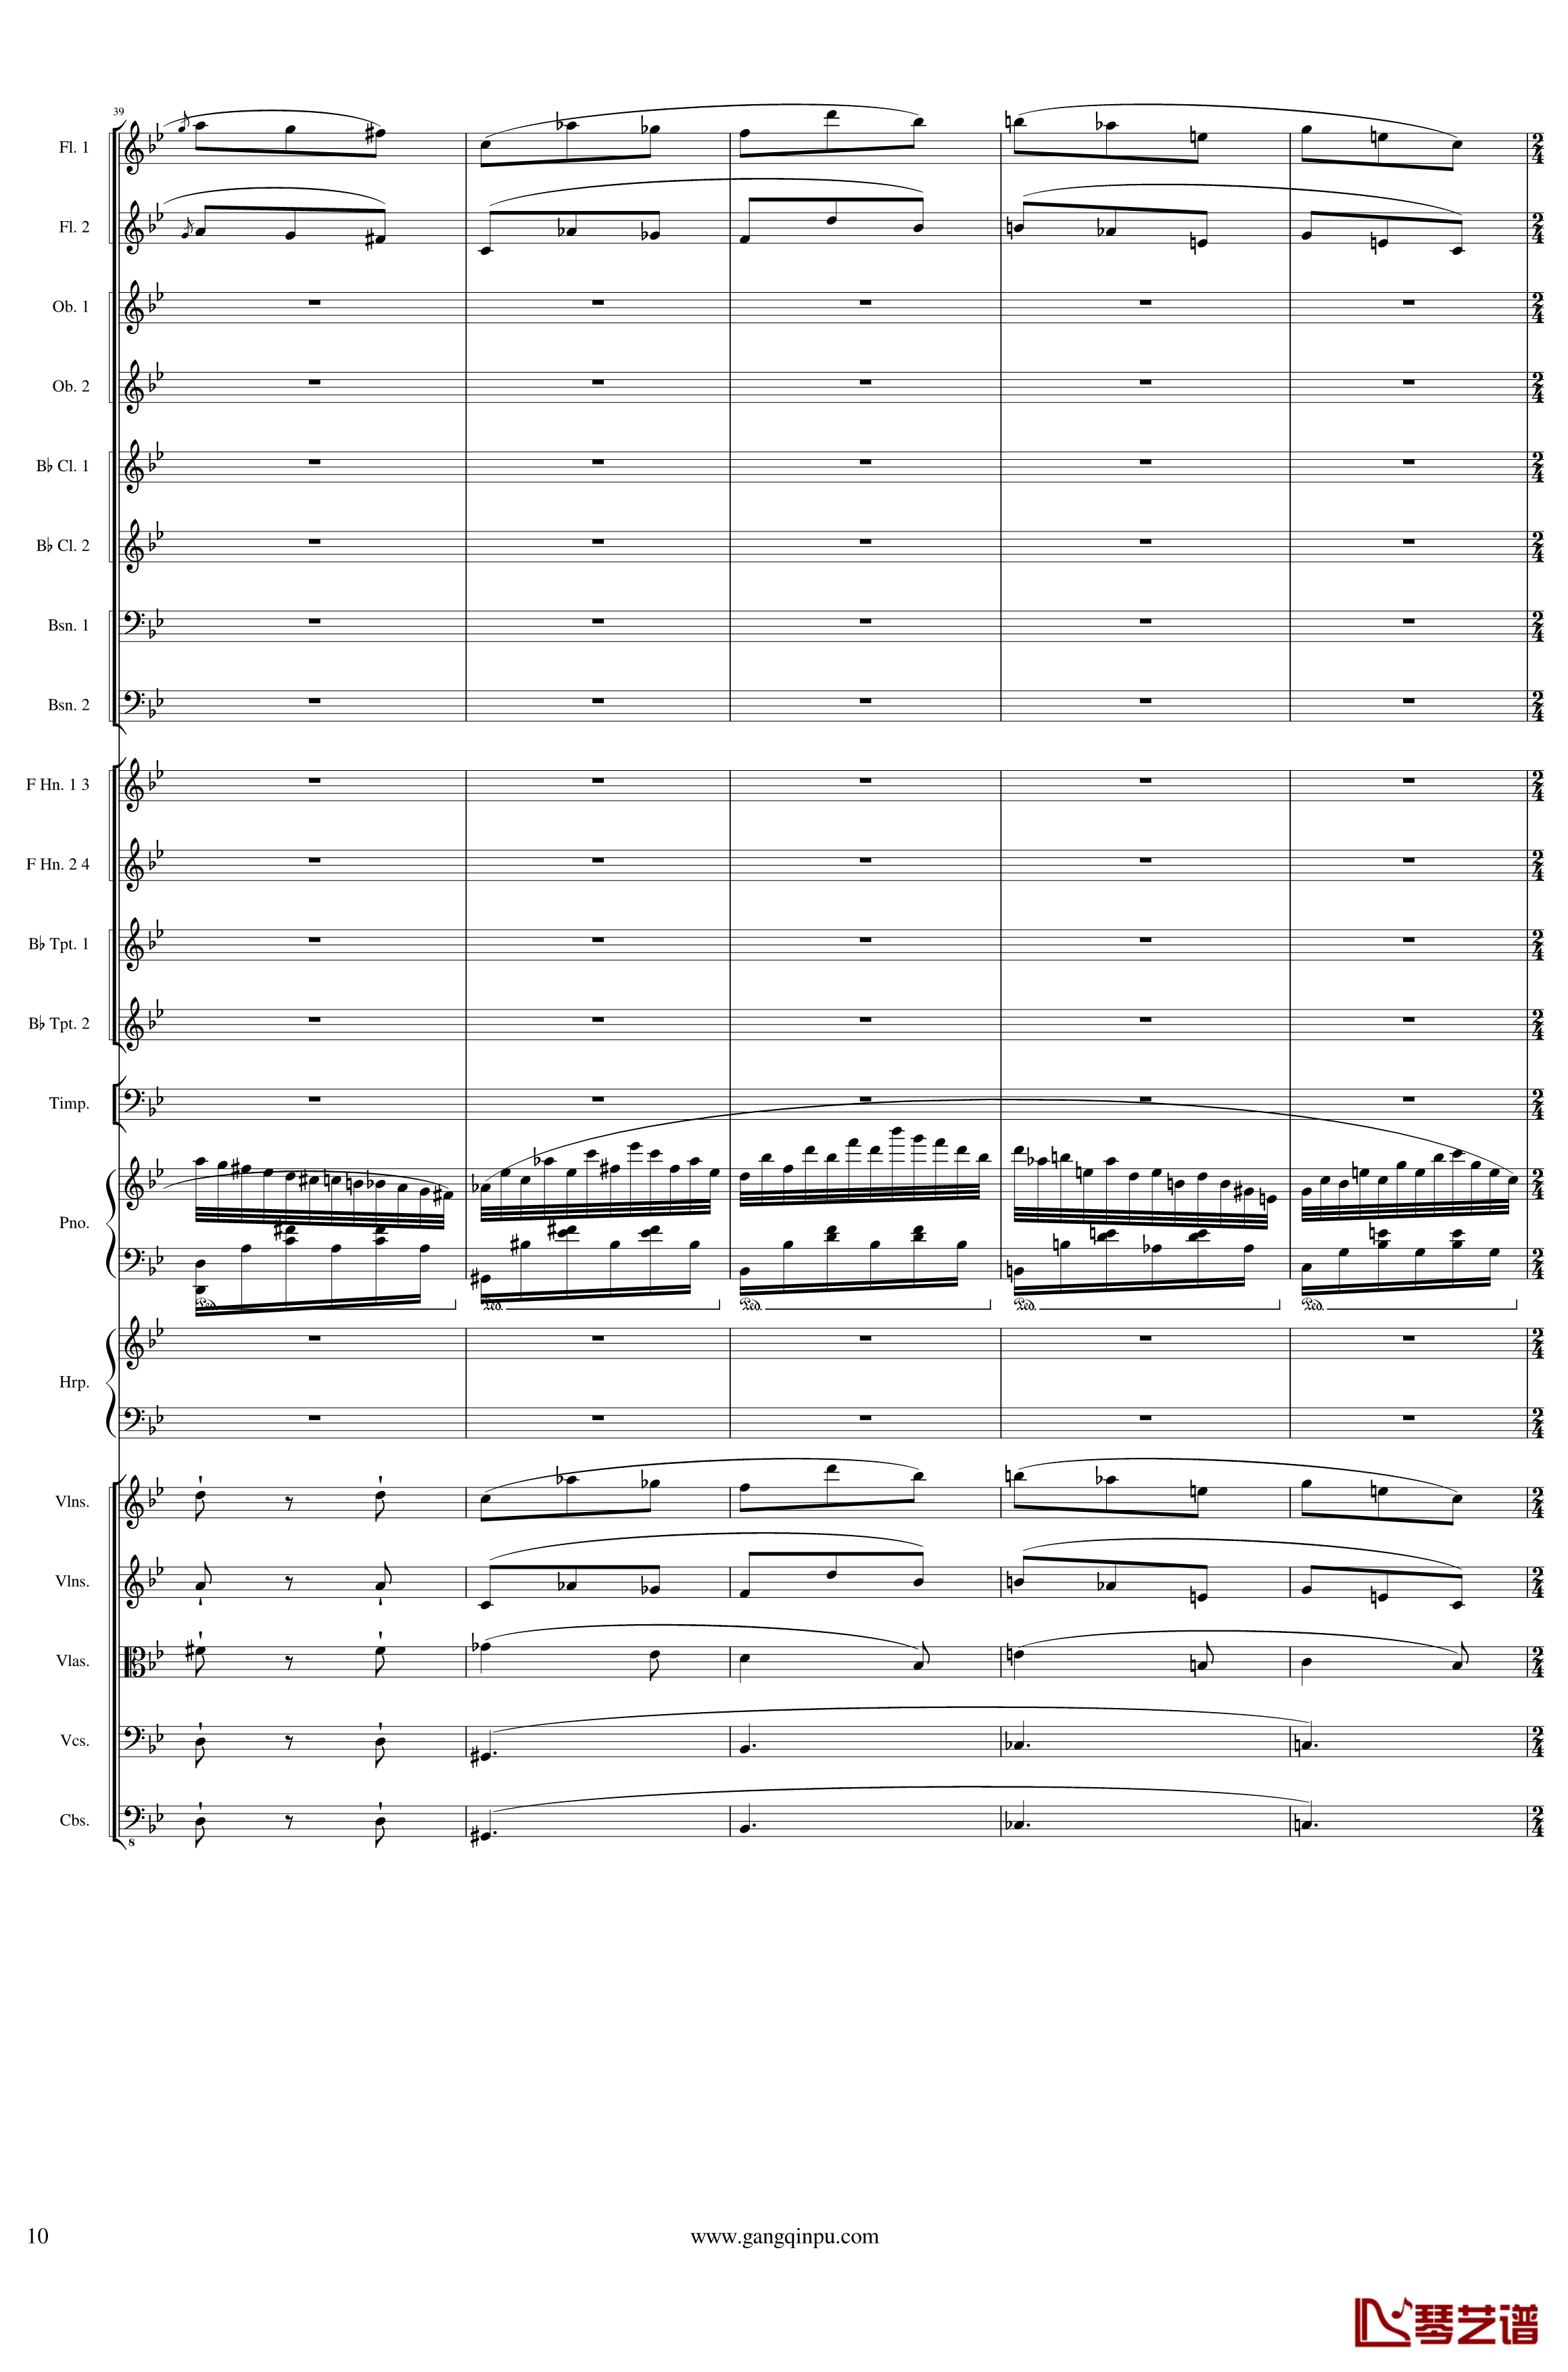 Symphonic Poem No.3, Op.91 Part 1钢琴谱-一个球10